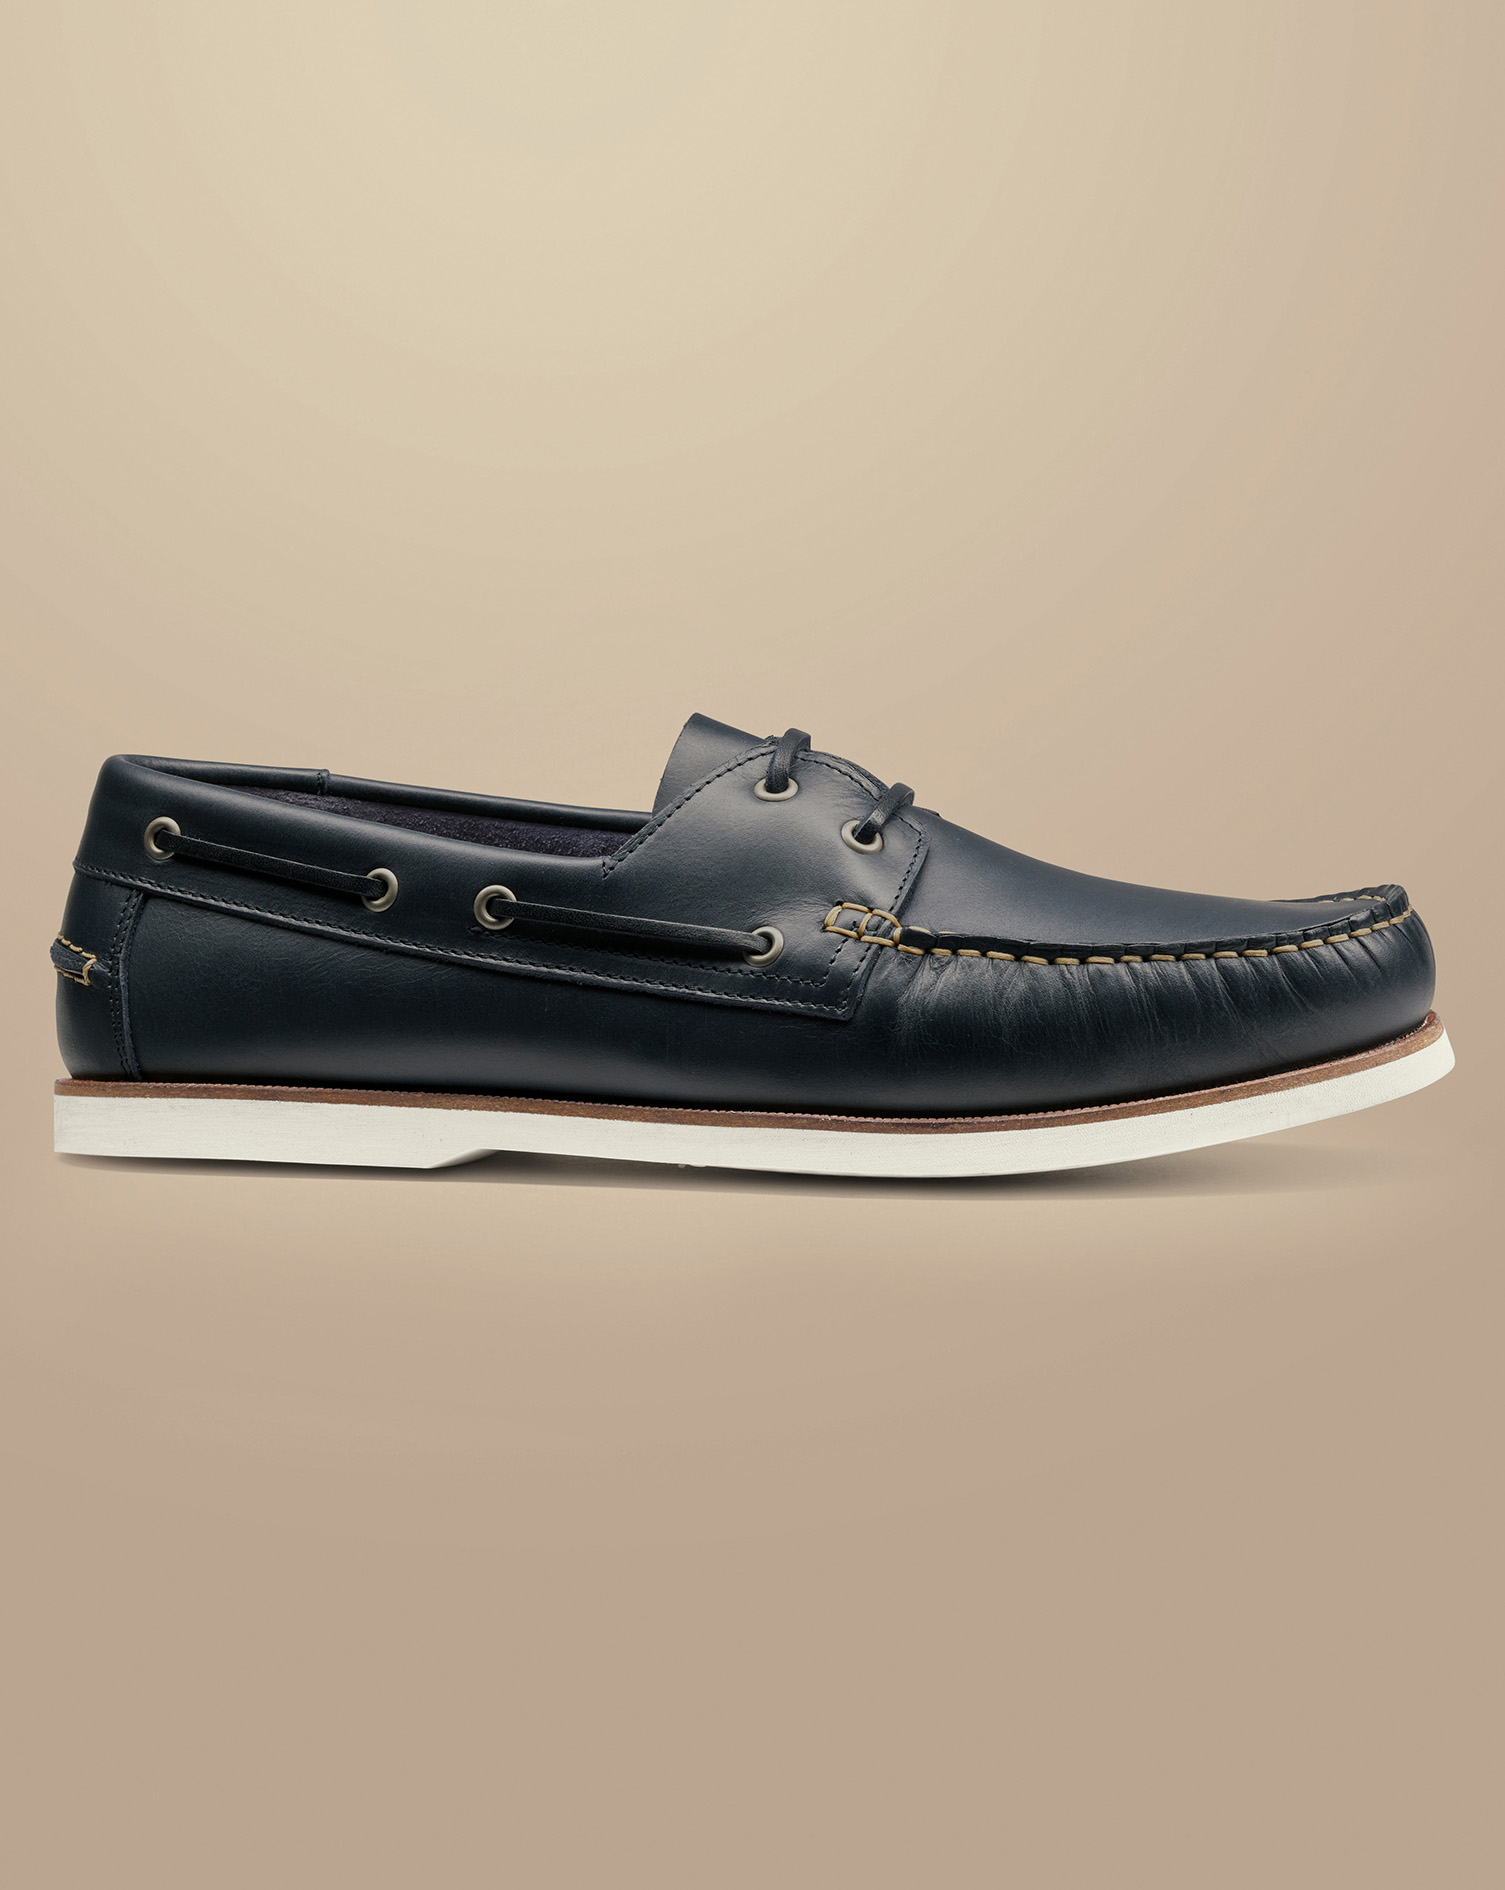 Men's Charles Tyrwhitt Leather Boat Shoe - Dark Navy Blue Size 8
